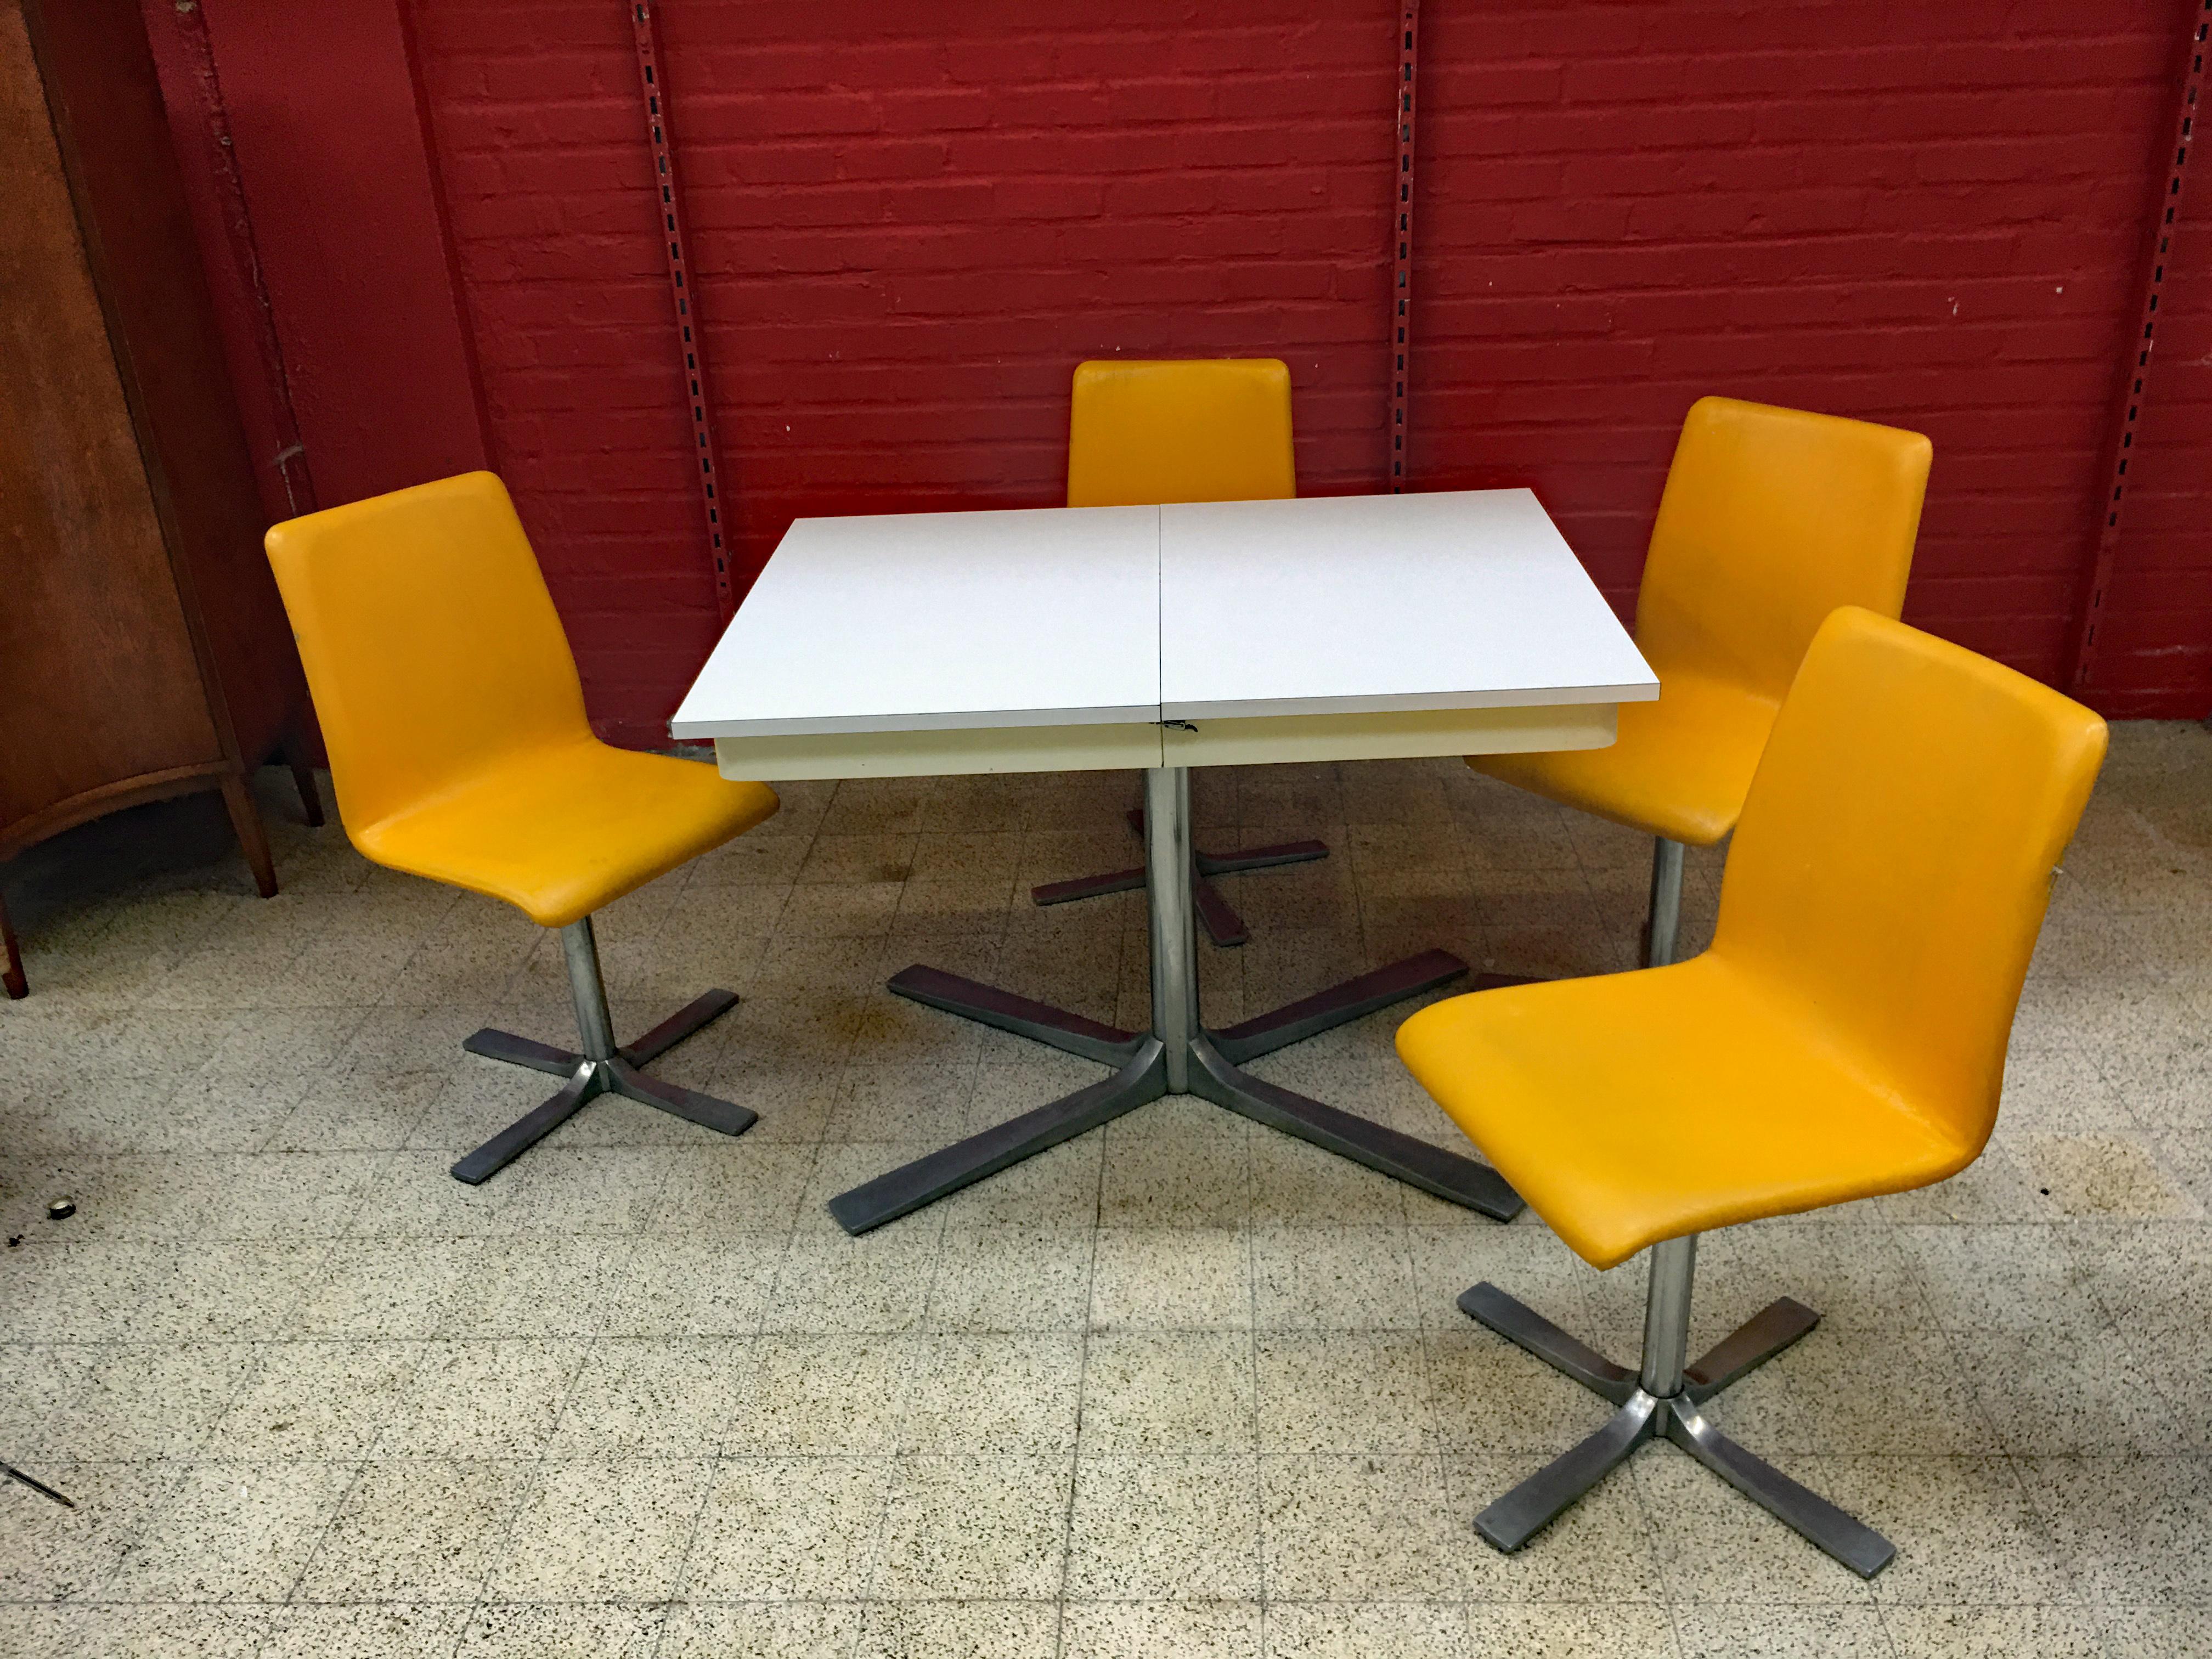 Typisches französisches Küchenset aus den 60er Jahren.
1 Tisch mit integrierten Verlängerungen und 4 Sitzplätzen.
guter Allgemeinzustand, abgenutzte Sitzpolsterung 

Abmessungen Tisch geschlossen : 76 x 110 x80 cm
Maße Tisch geöffnet : 76 x144